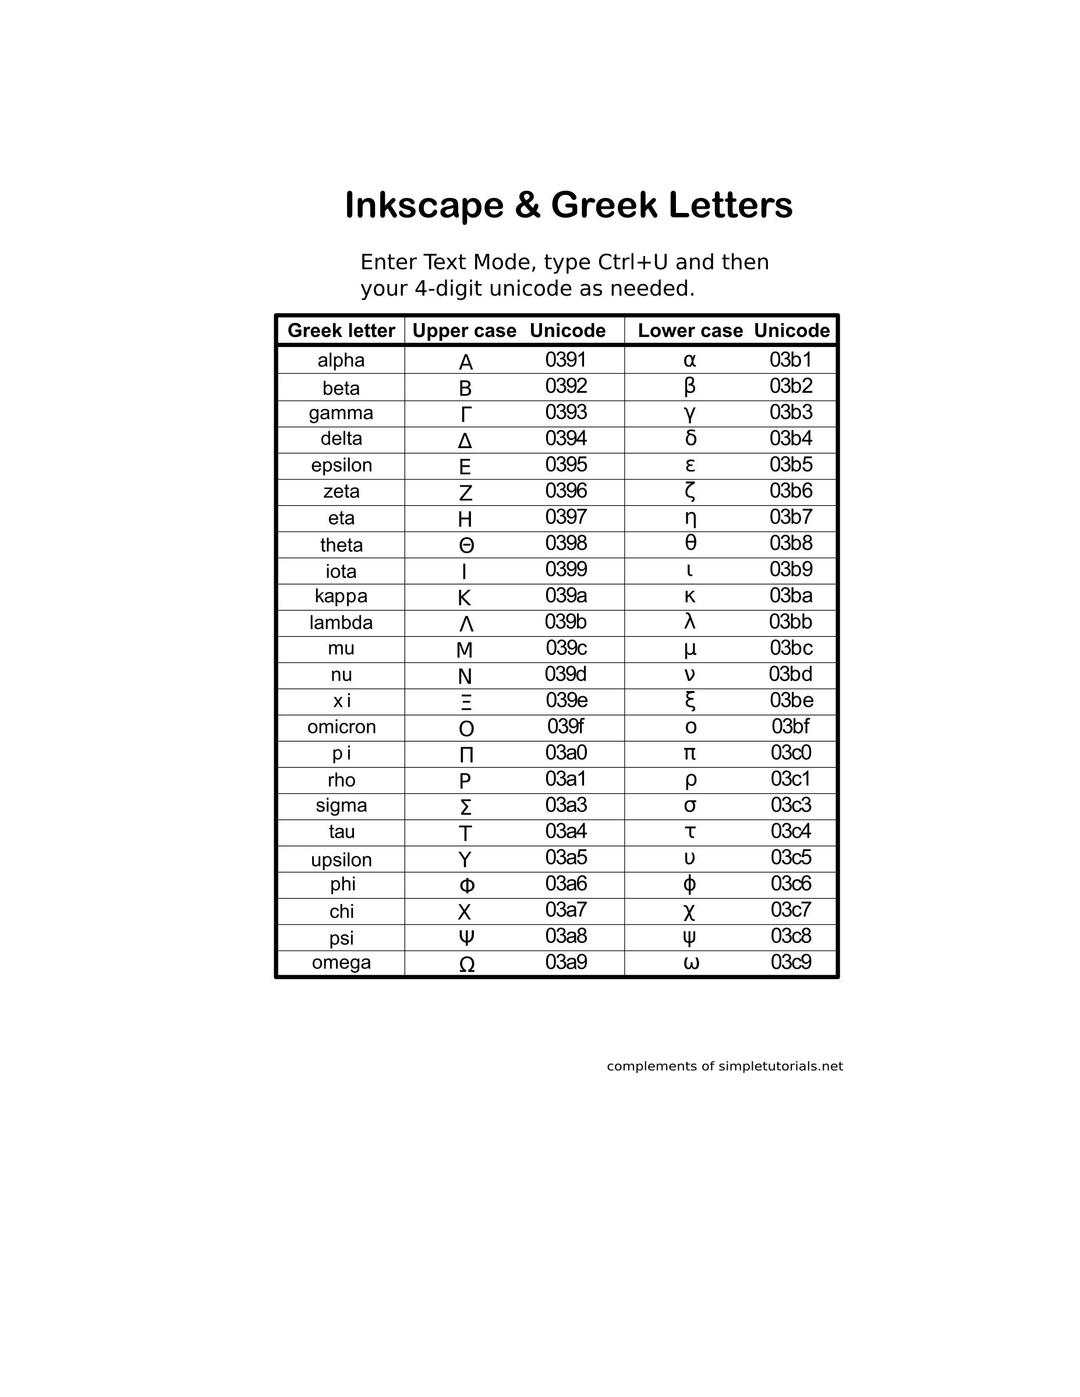 Greek Letters in Inkscape png transparent